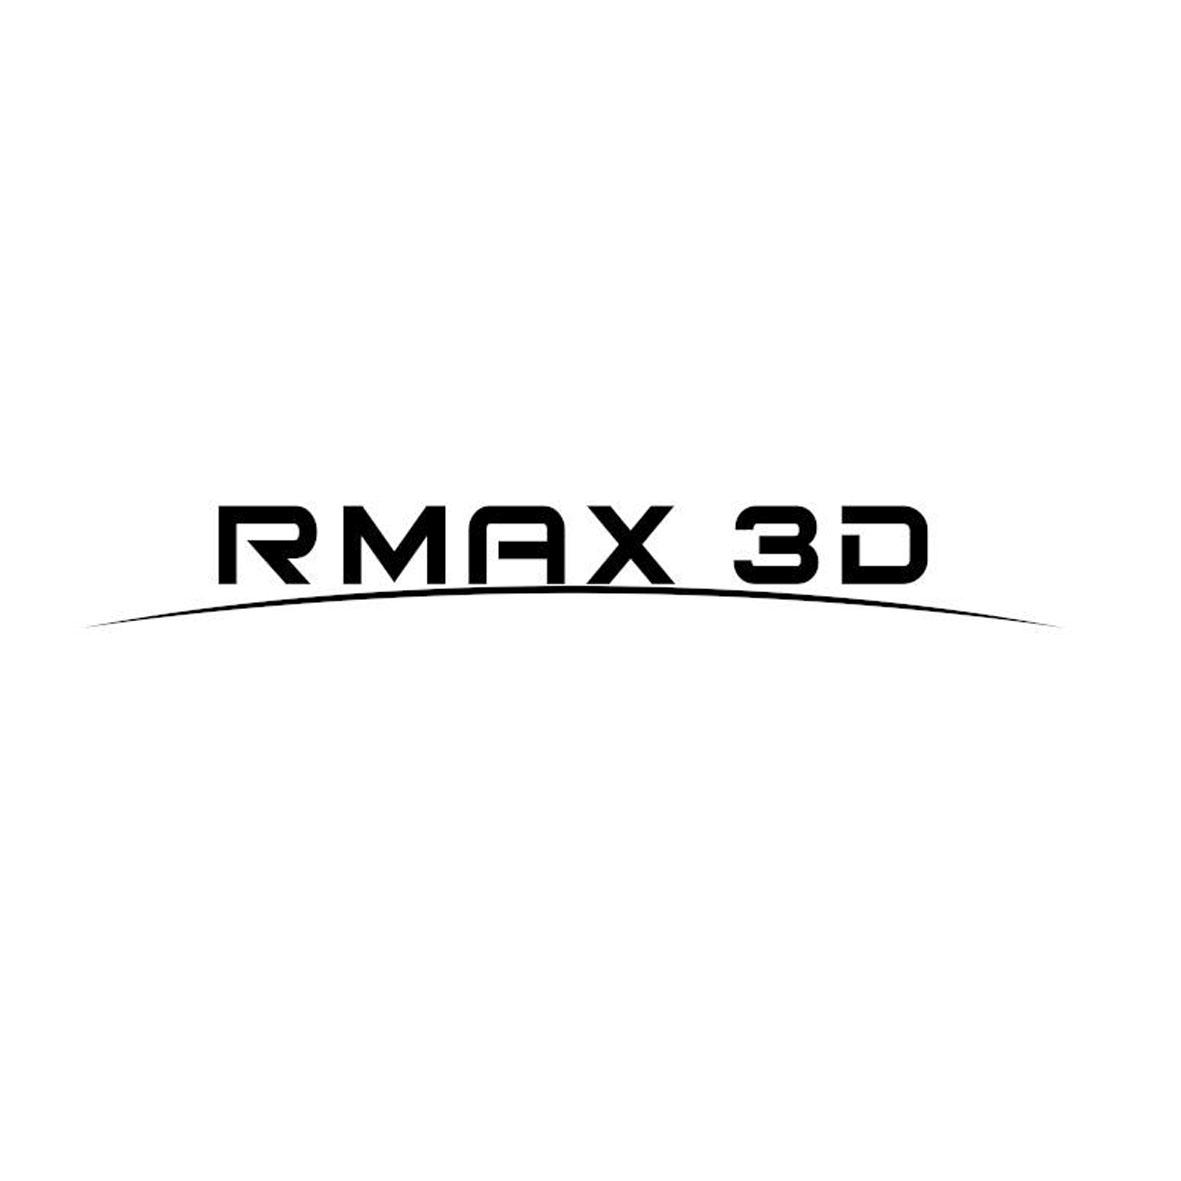 RMAX 3D